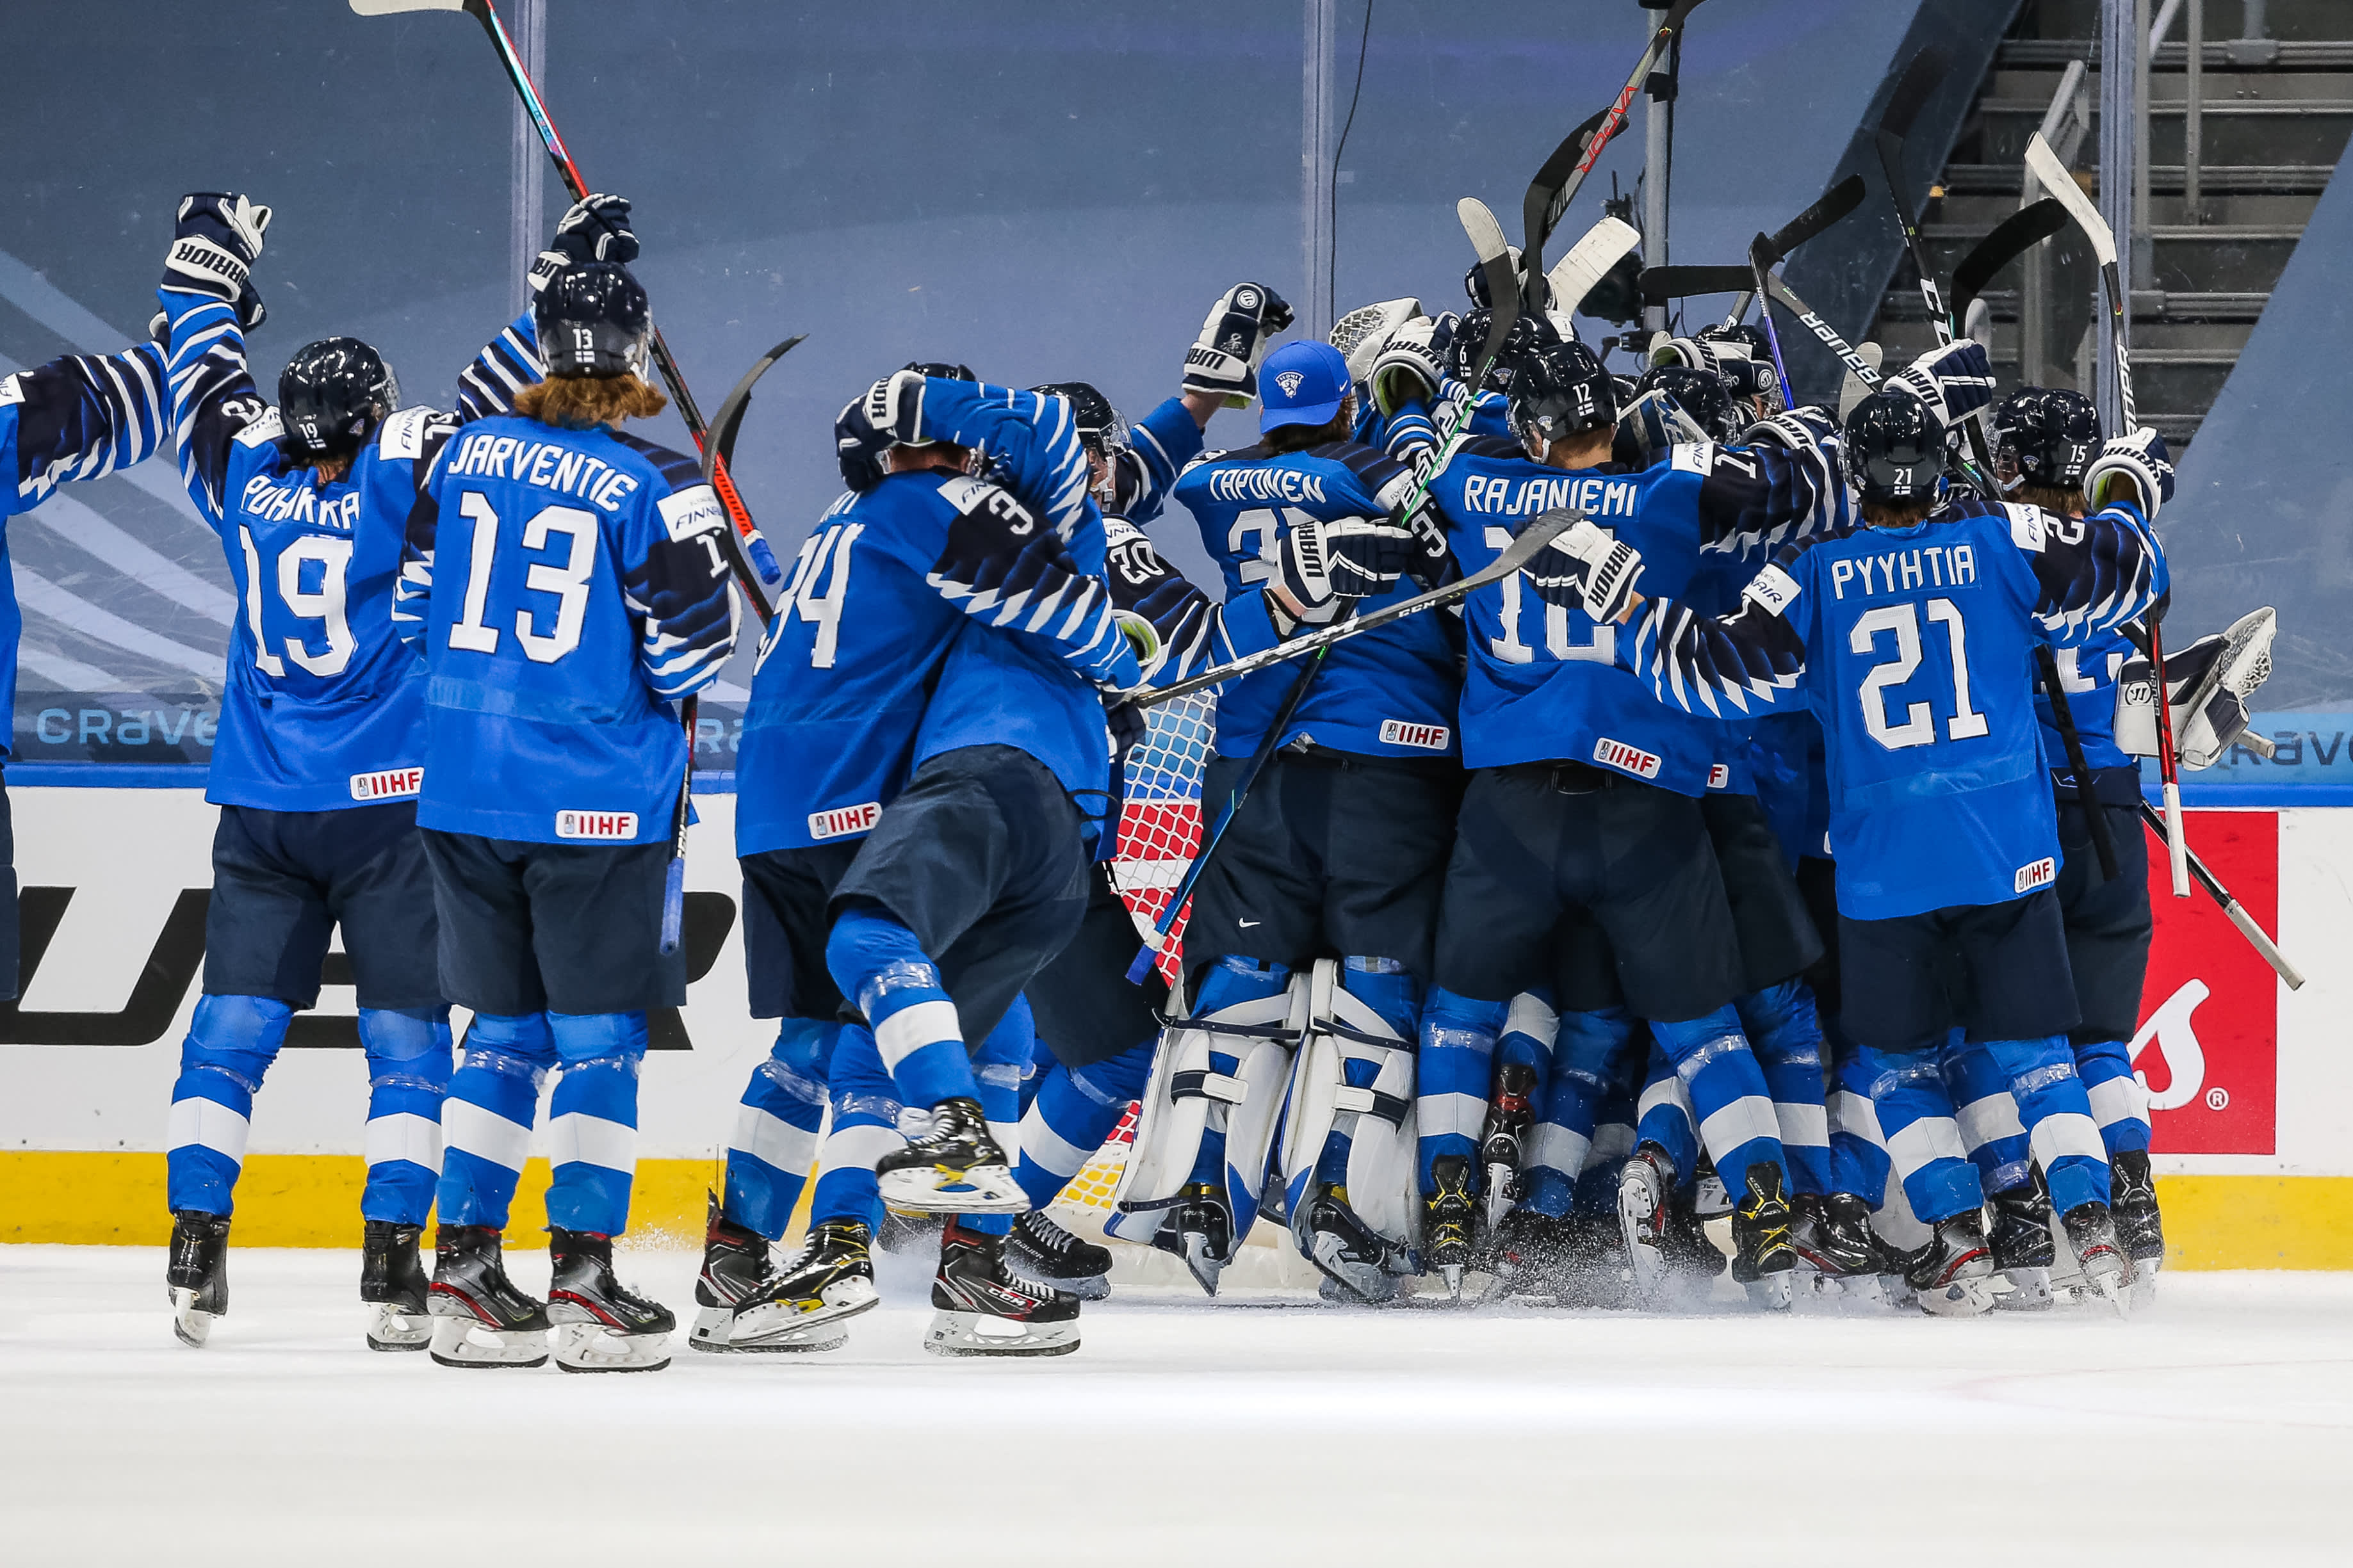 Nuorten Leijonien joukkue tuulettaa villisti välieräpaikkaa Edmontonin MM-kisoissa.